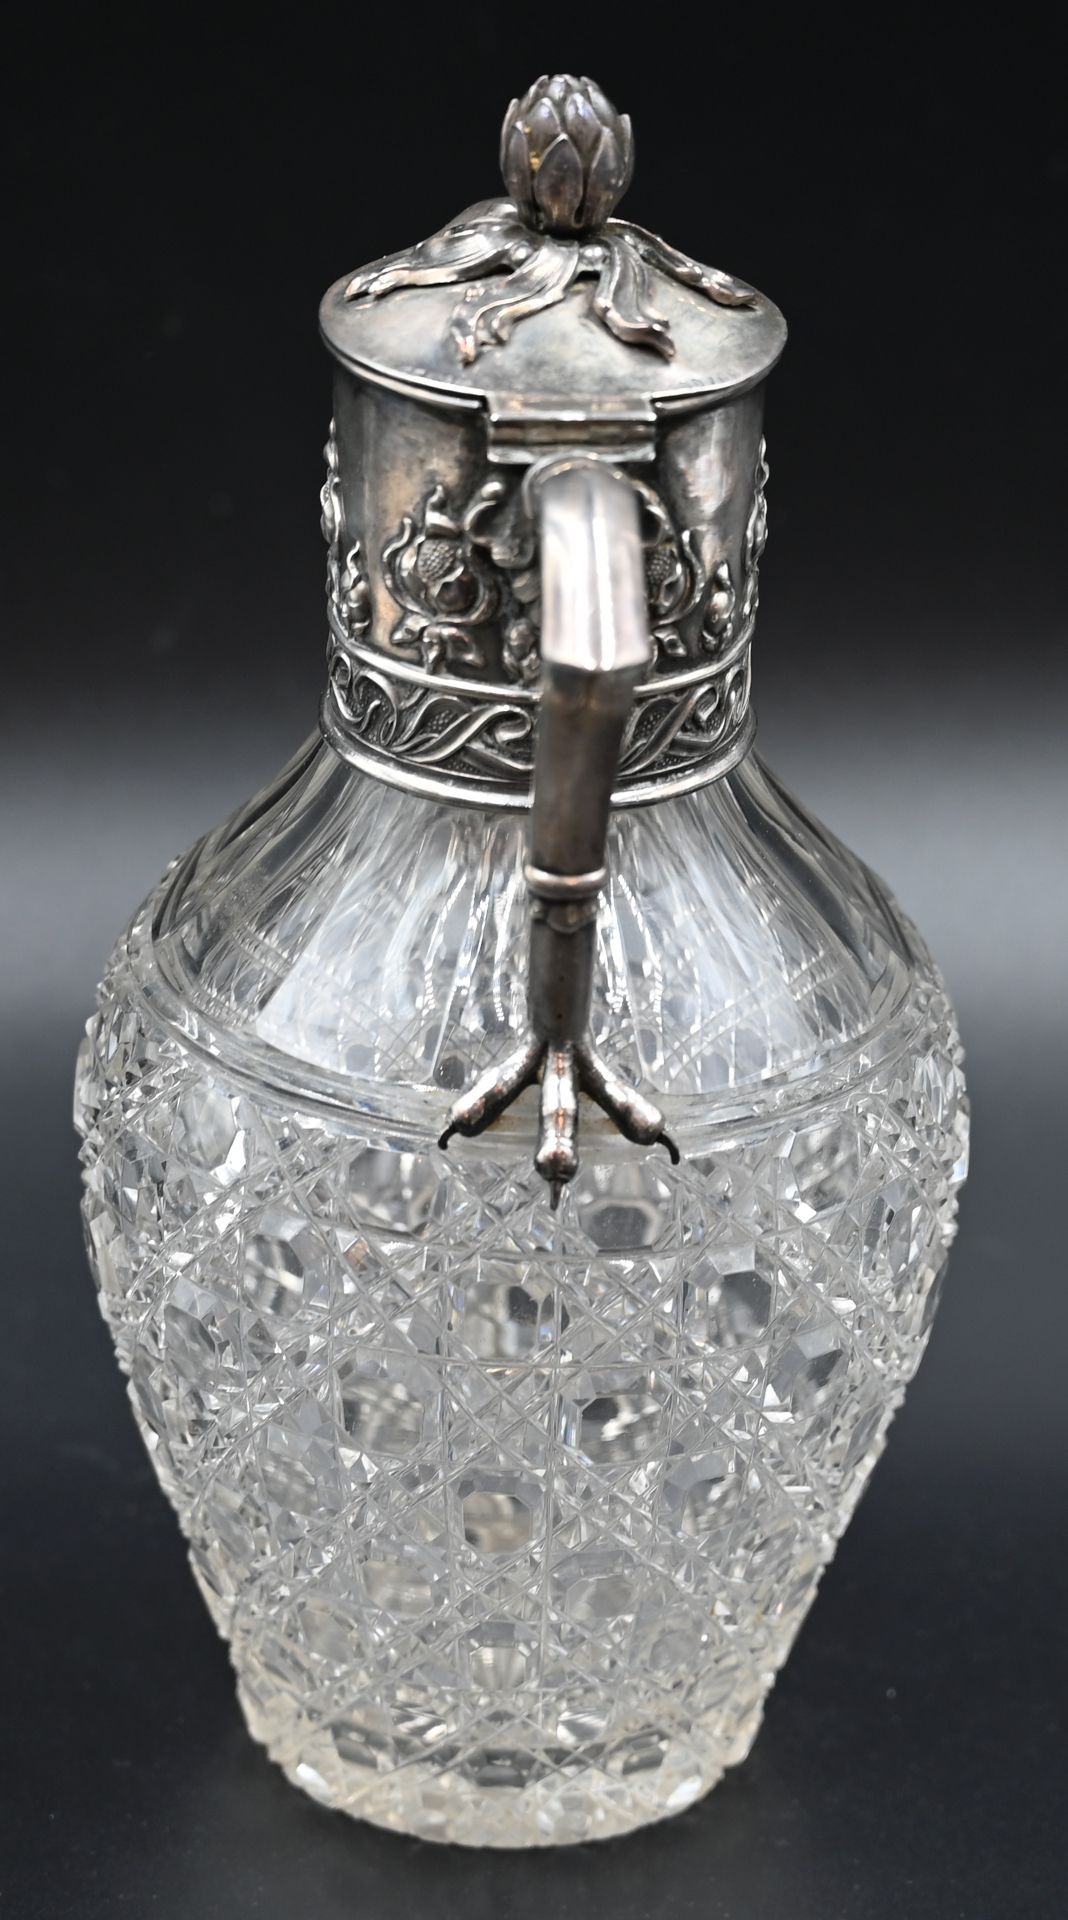 1 Kanne Glas mit Silbermontierung WILKENS 800, Pflanzen-/Krallenverzierung, Höhe ca. 24cm - Bild 2 aus 2